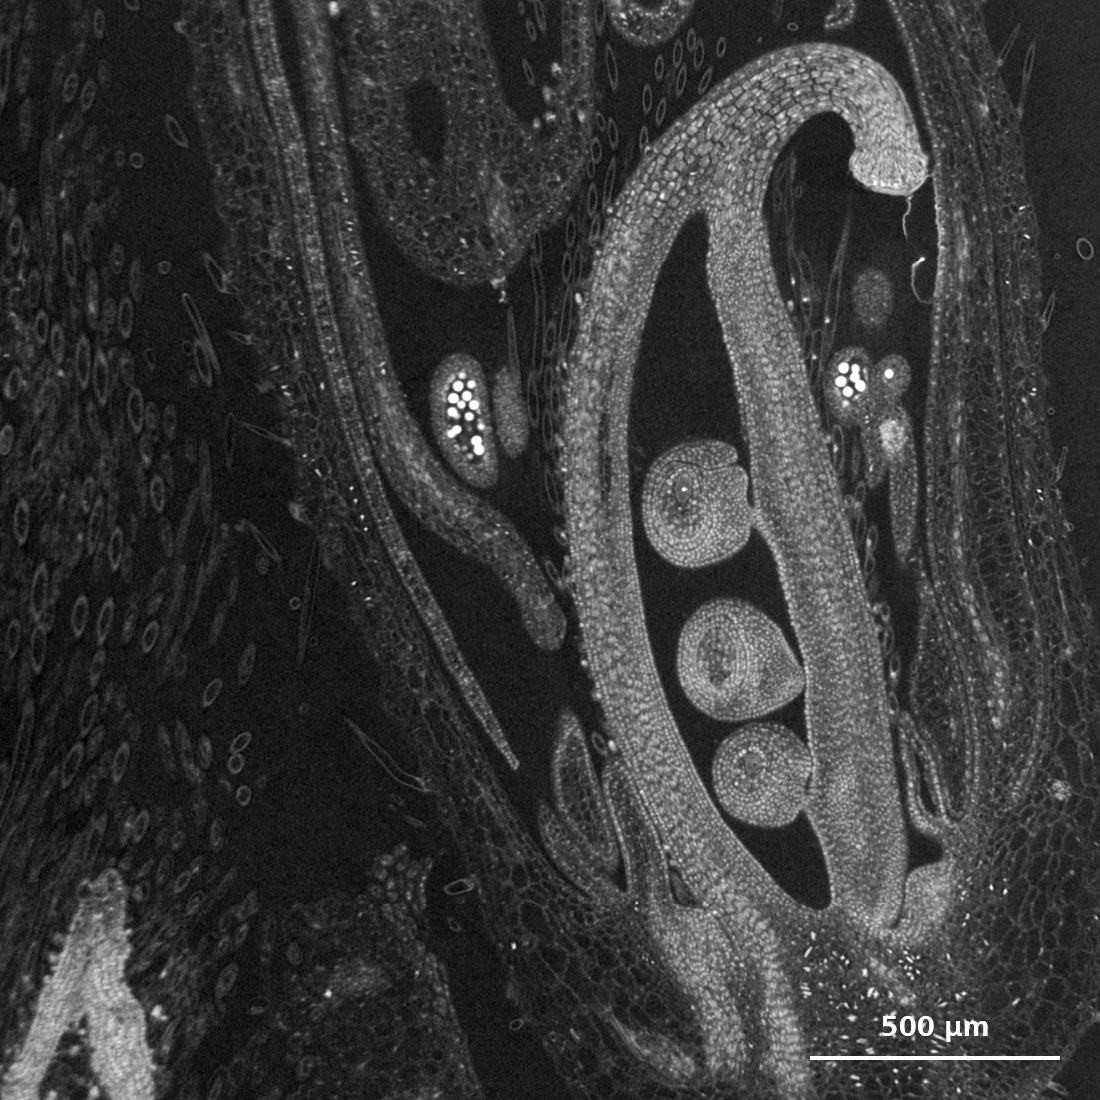 Sich entwickelndes Blütenorgan einer Sojabohne, aufgenommen mit ZEISS Xradia Versa-Röntgenmikroskop. Zeigt den Fruchtknoten mit sich entwickelnder Samenanlage, umgeben von Staubbeuteln, die mit Pollenkörnern gefüllt sind.